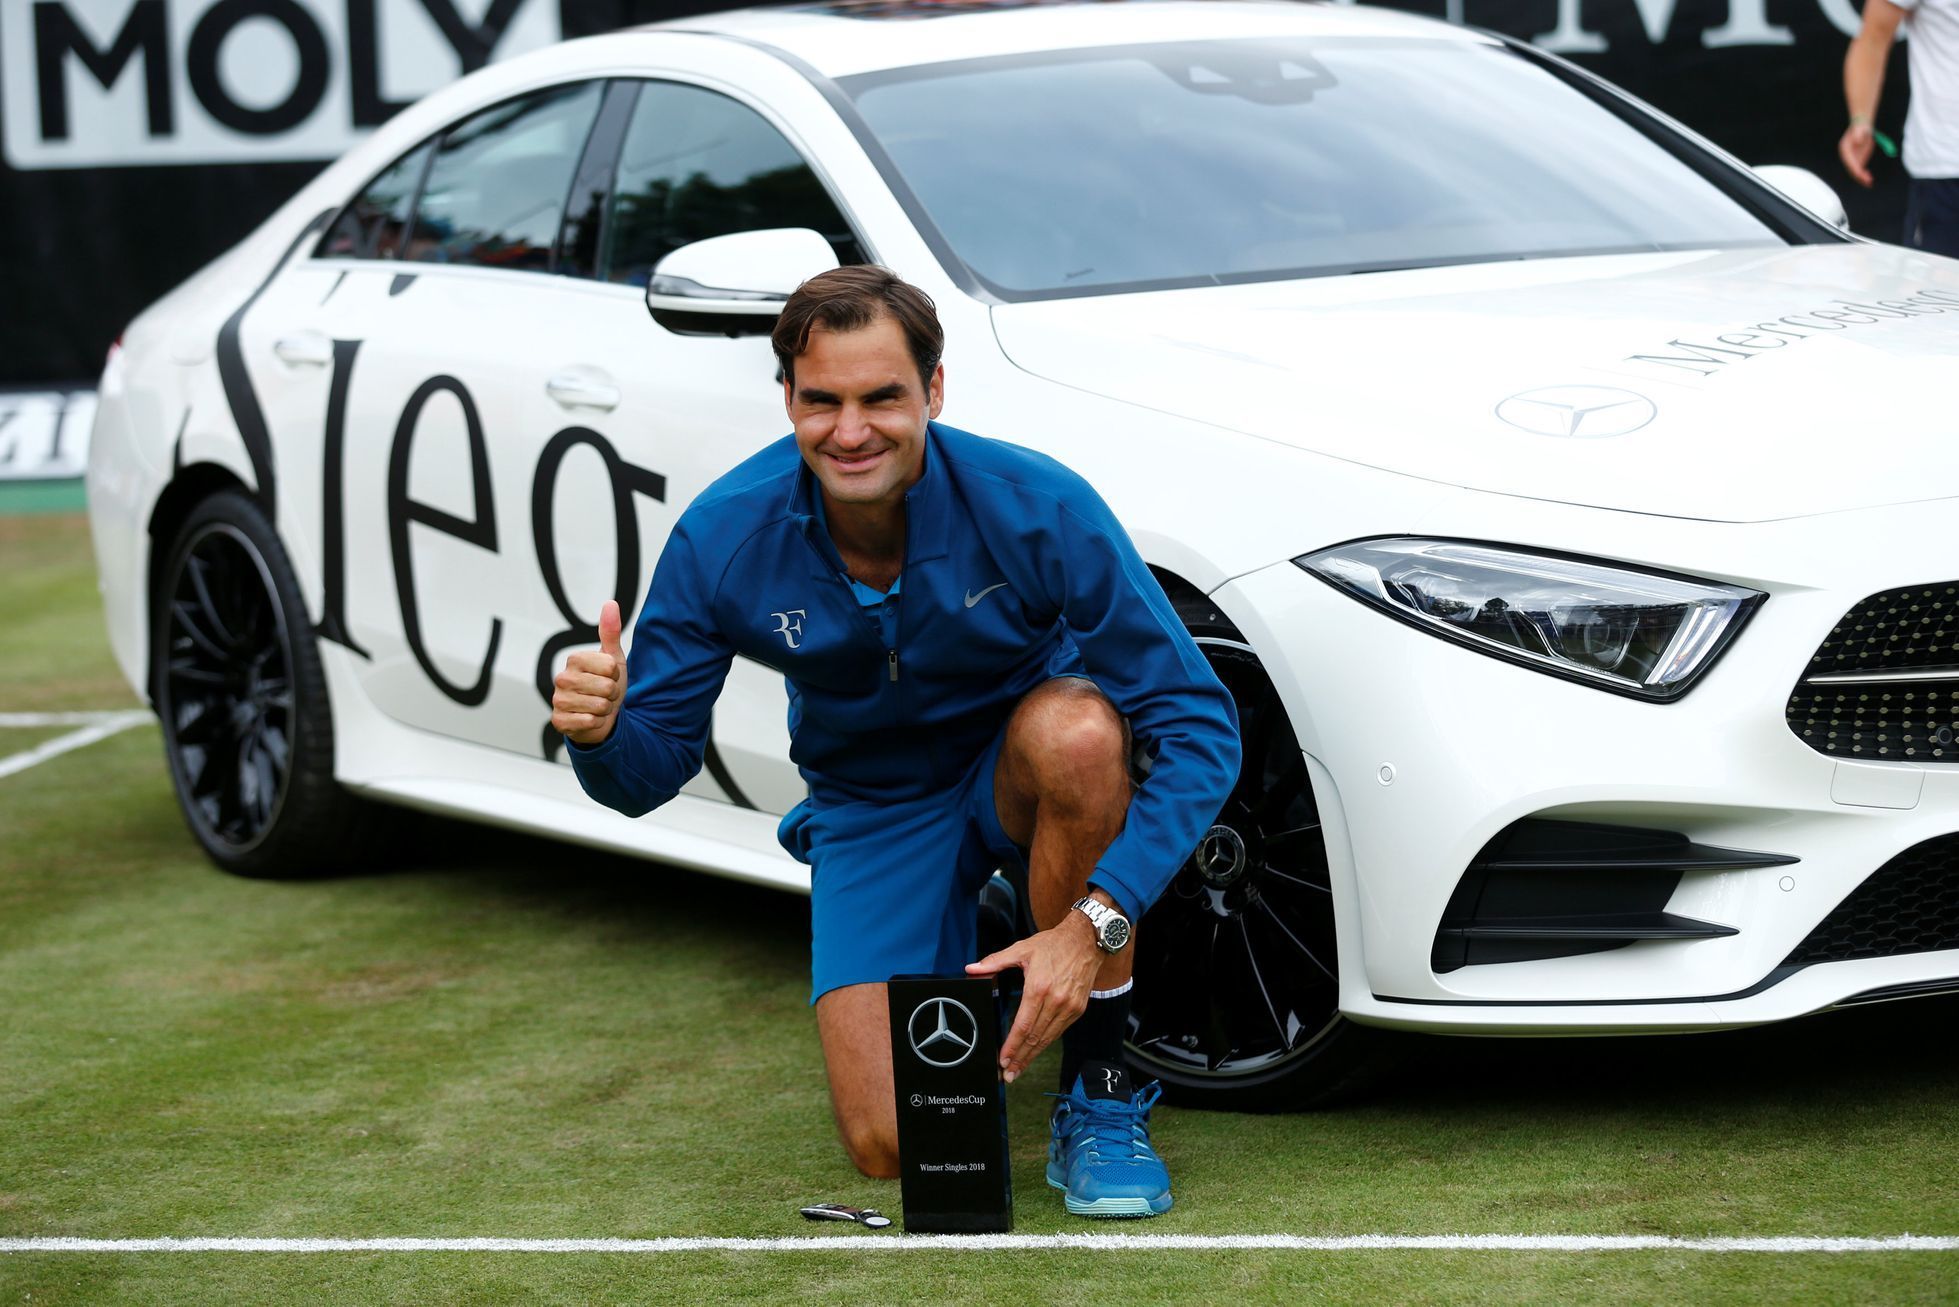 tenis, Roger Federer slaví triumf na turnaji ve Stuttgartu